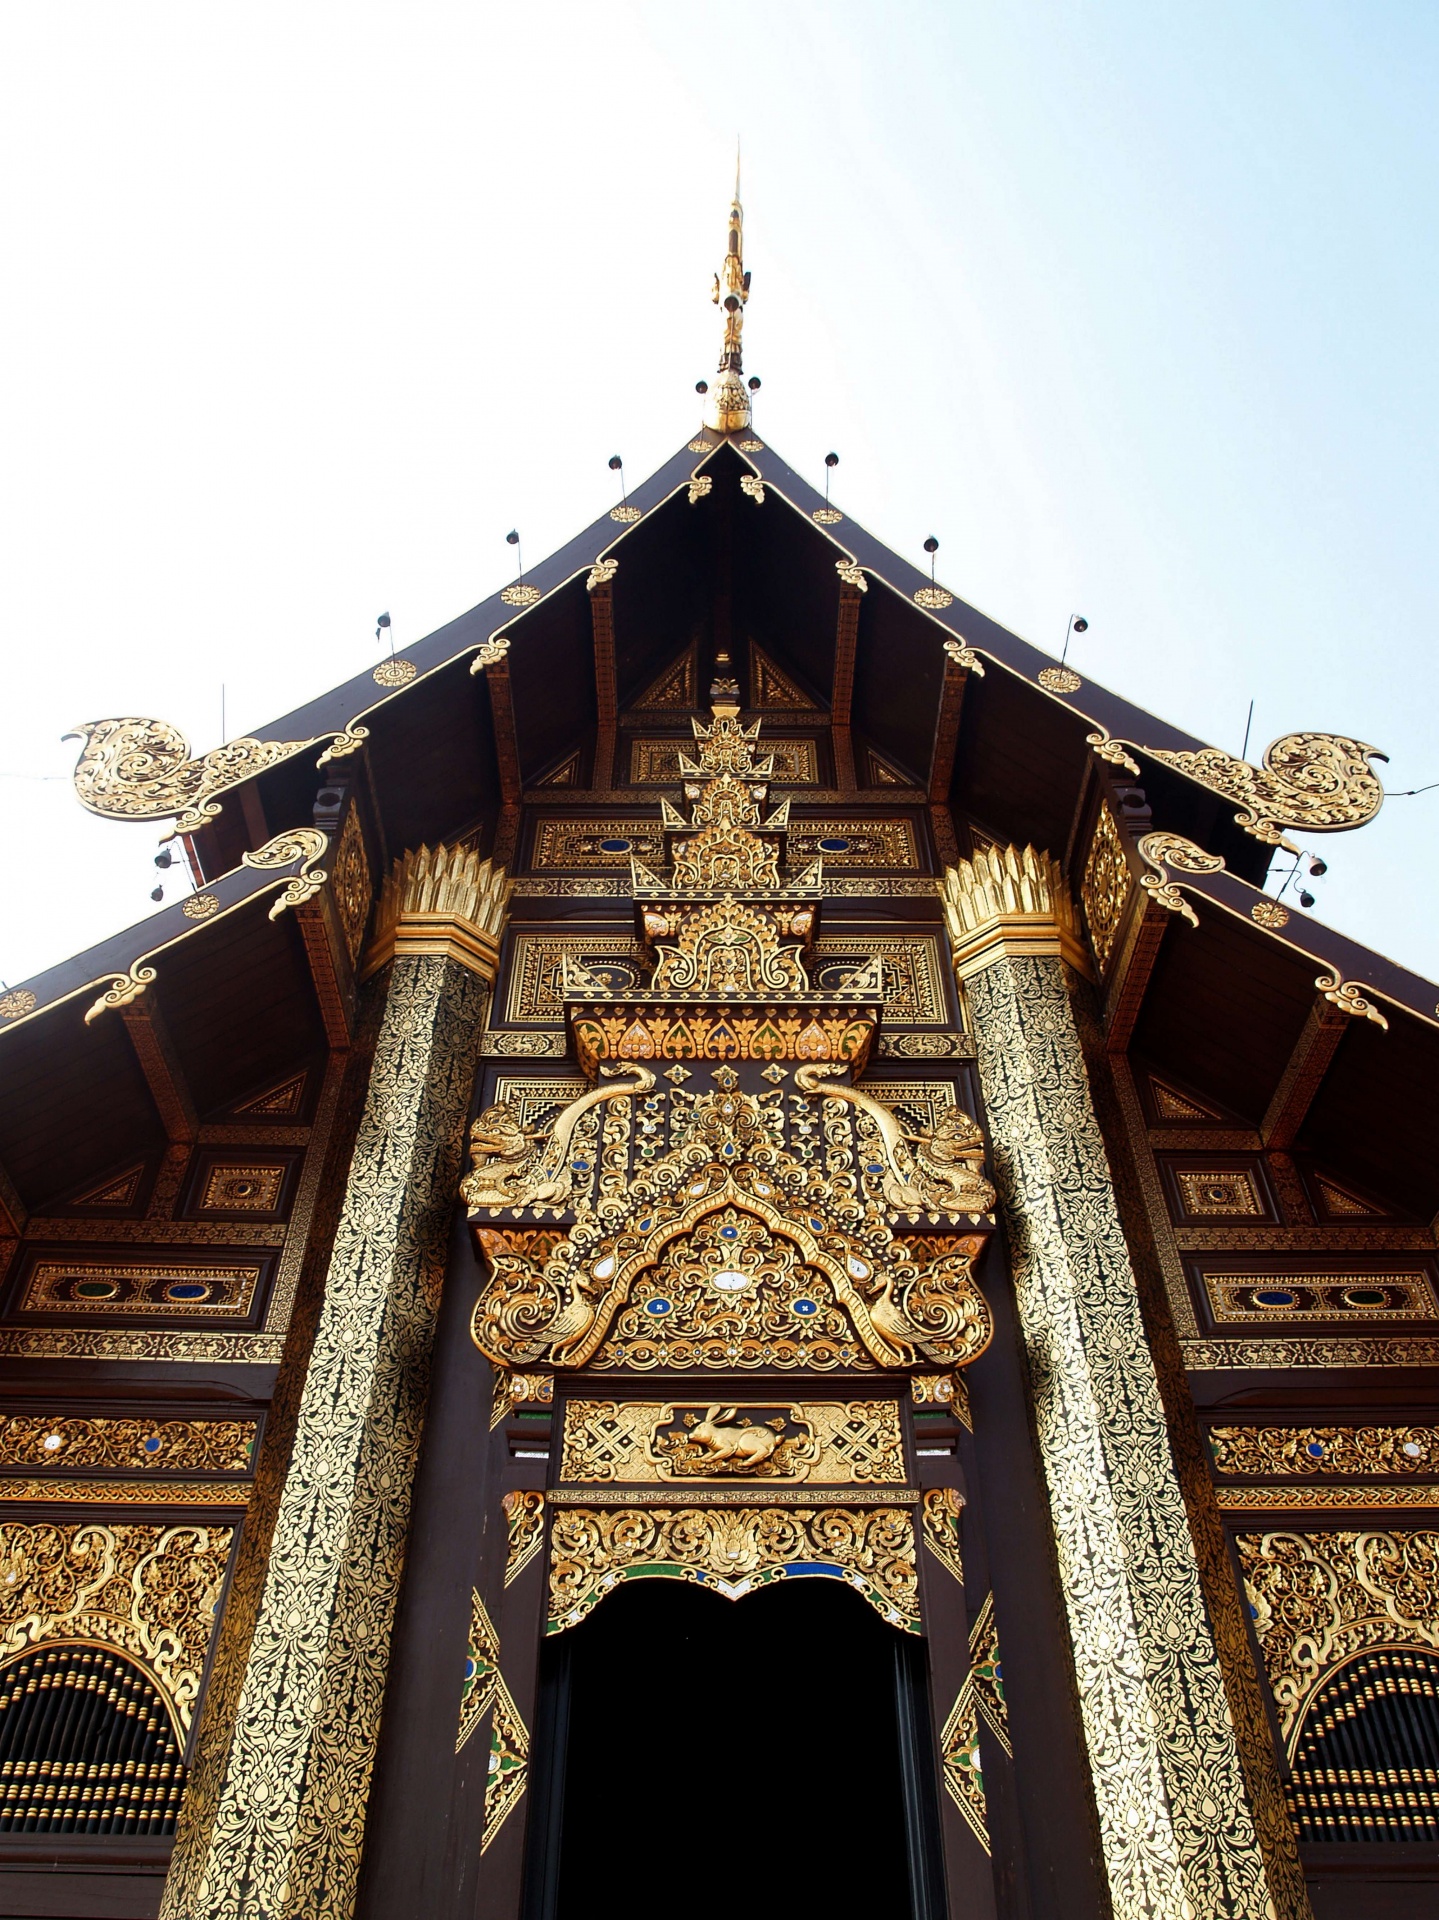 royal-pavilion-chiang-mai-thailand-1592374807yN7.jpg